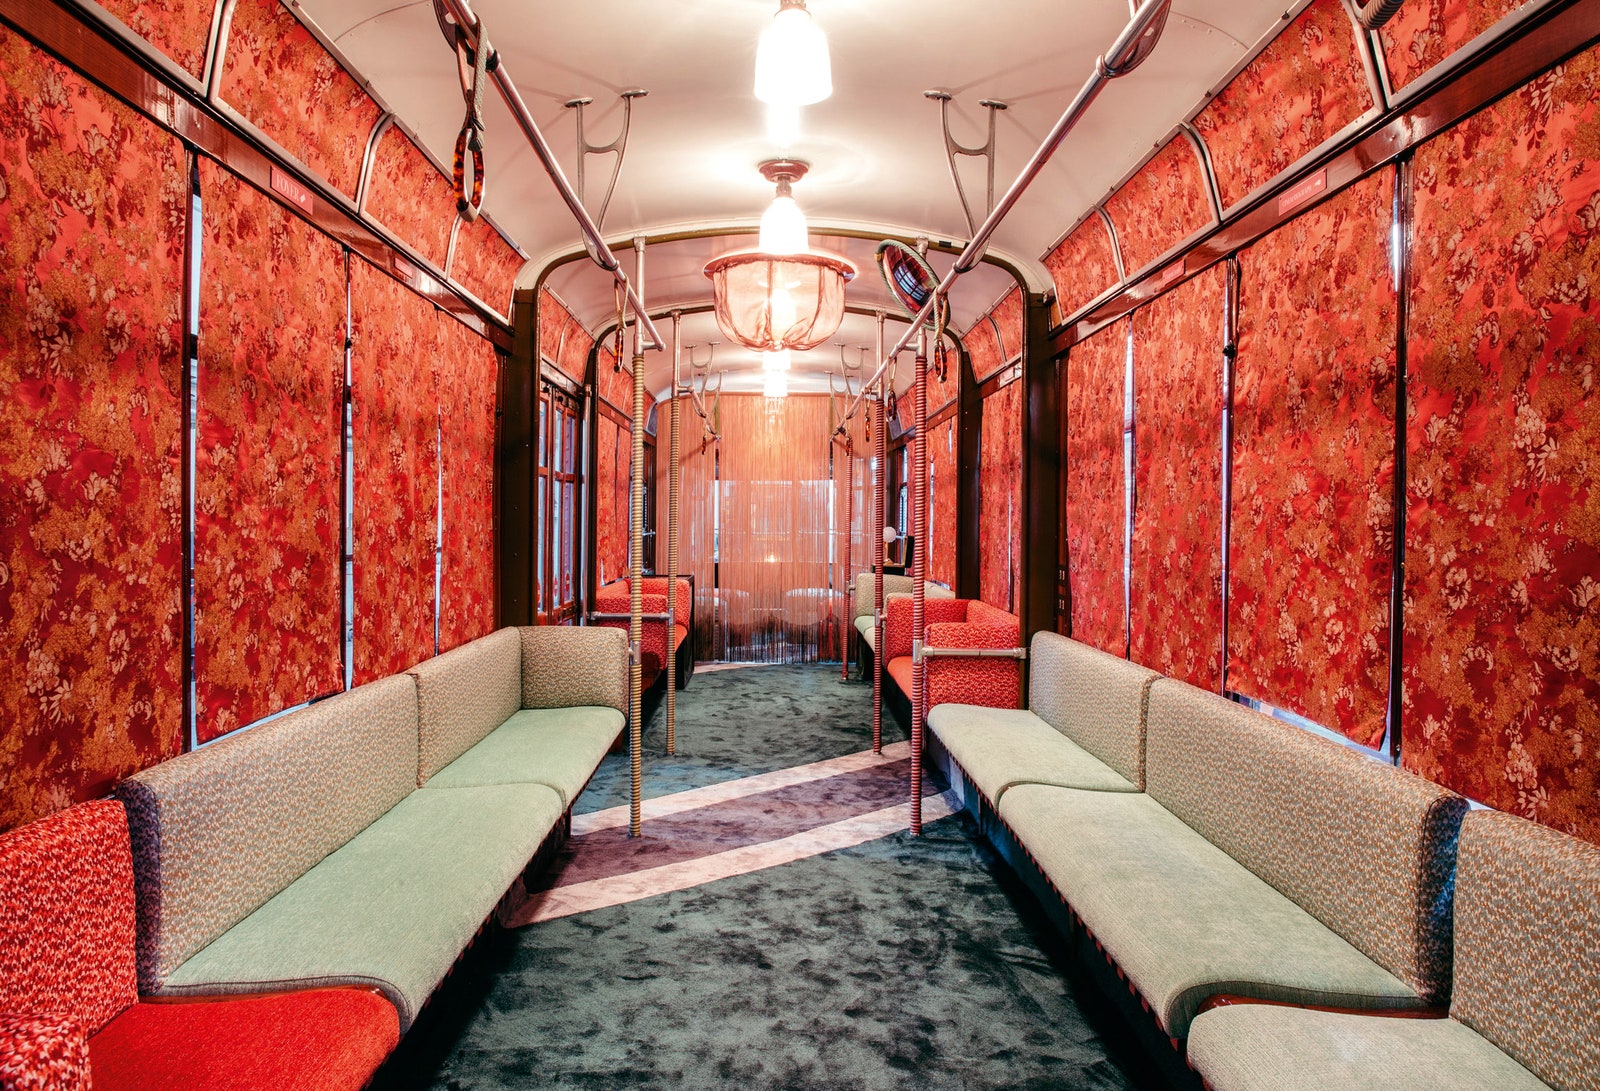 Раритетный трамвай декорированный Челестино для Rubelli на Миланской неделе дизайна 2018.